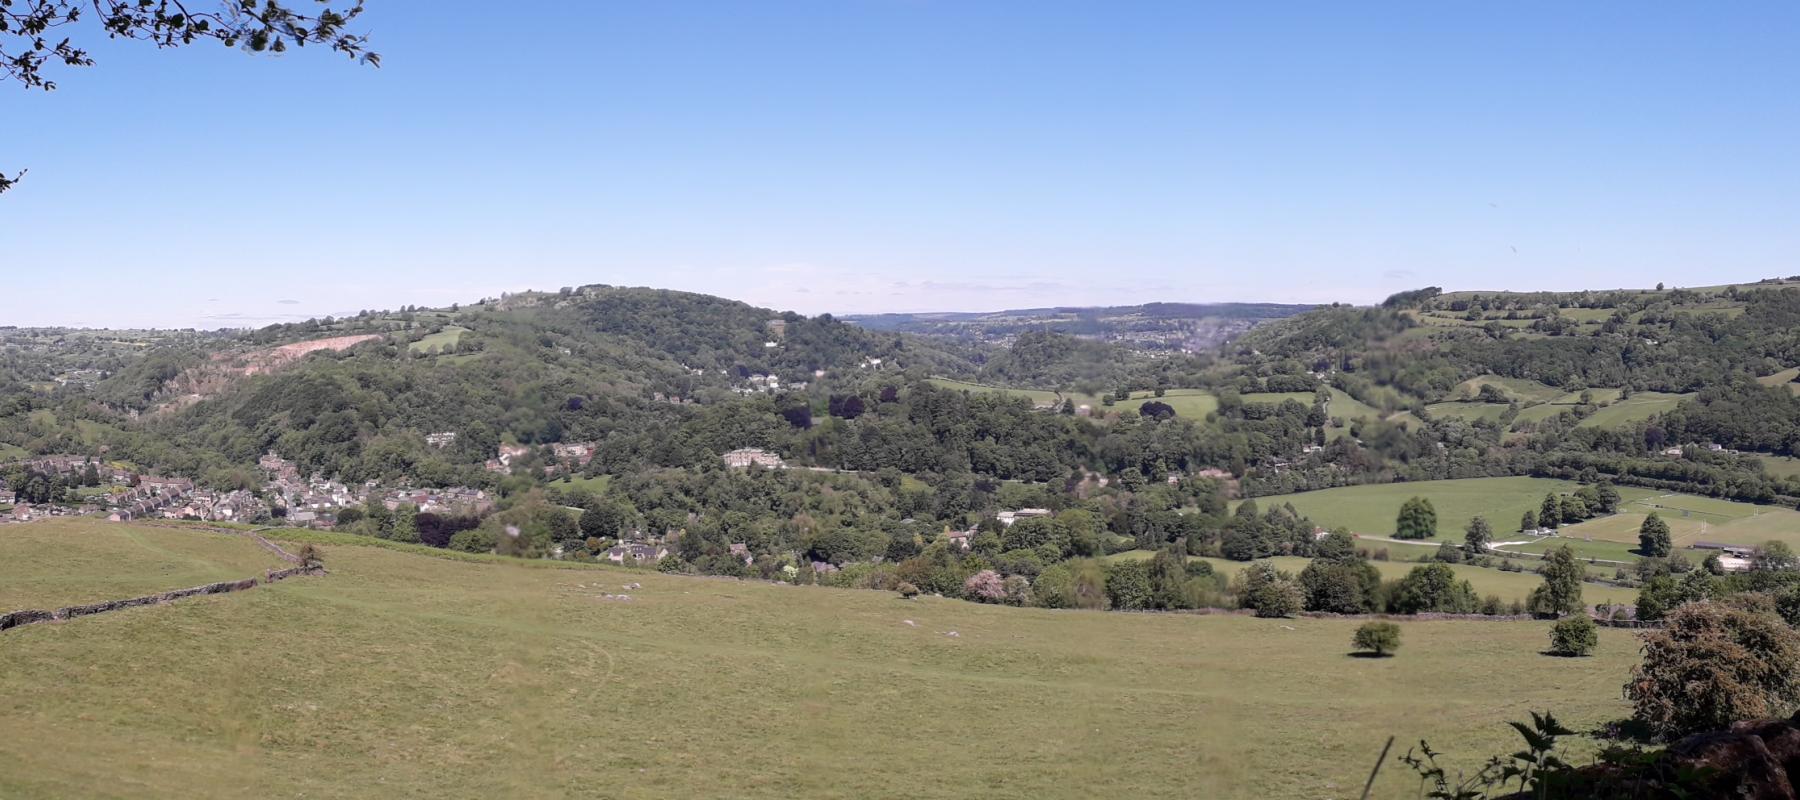 Derwent Valley countryside